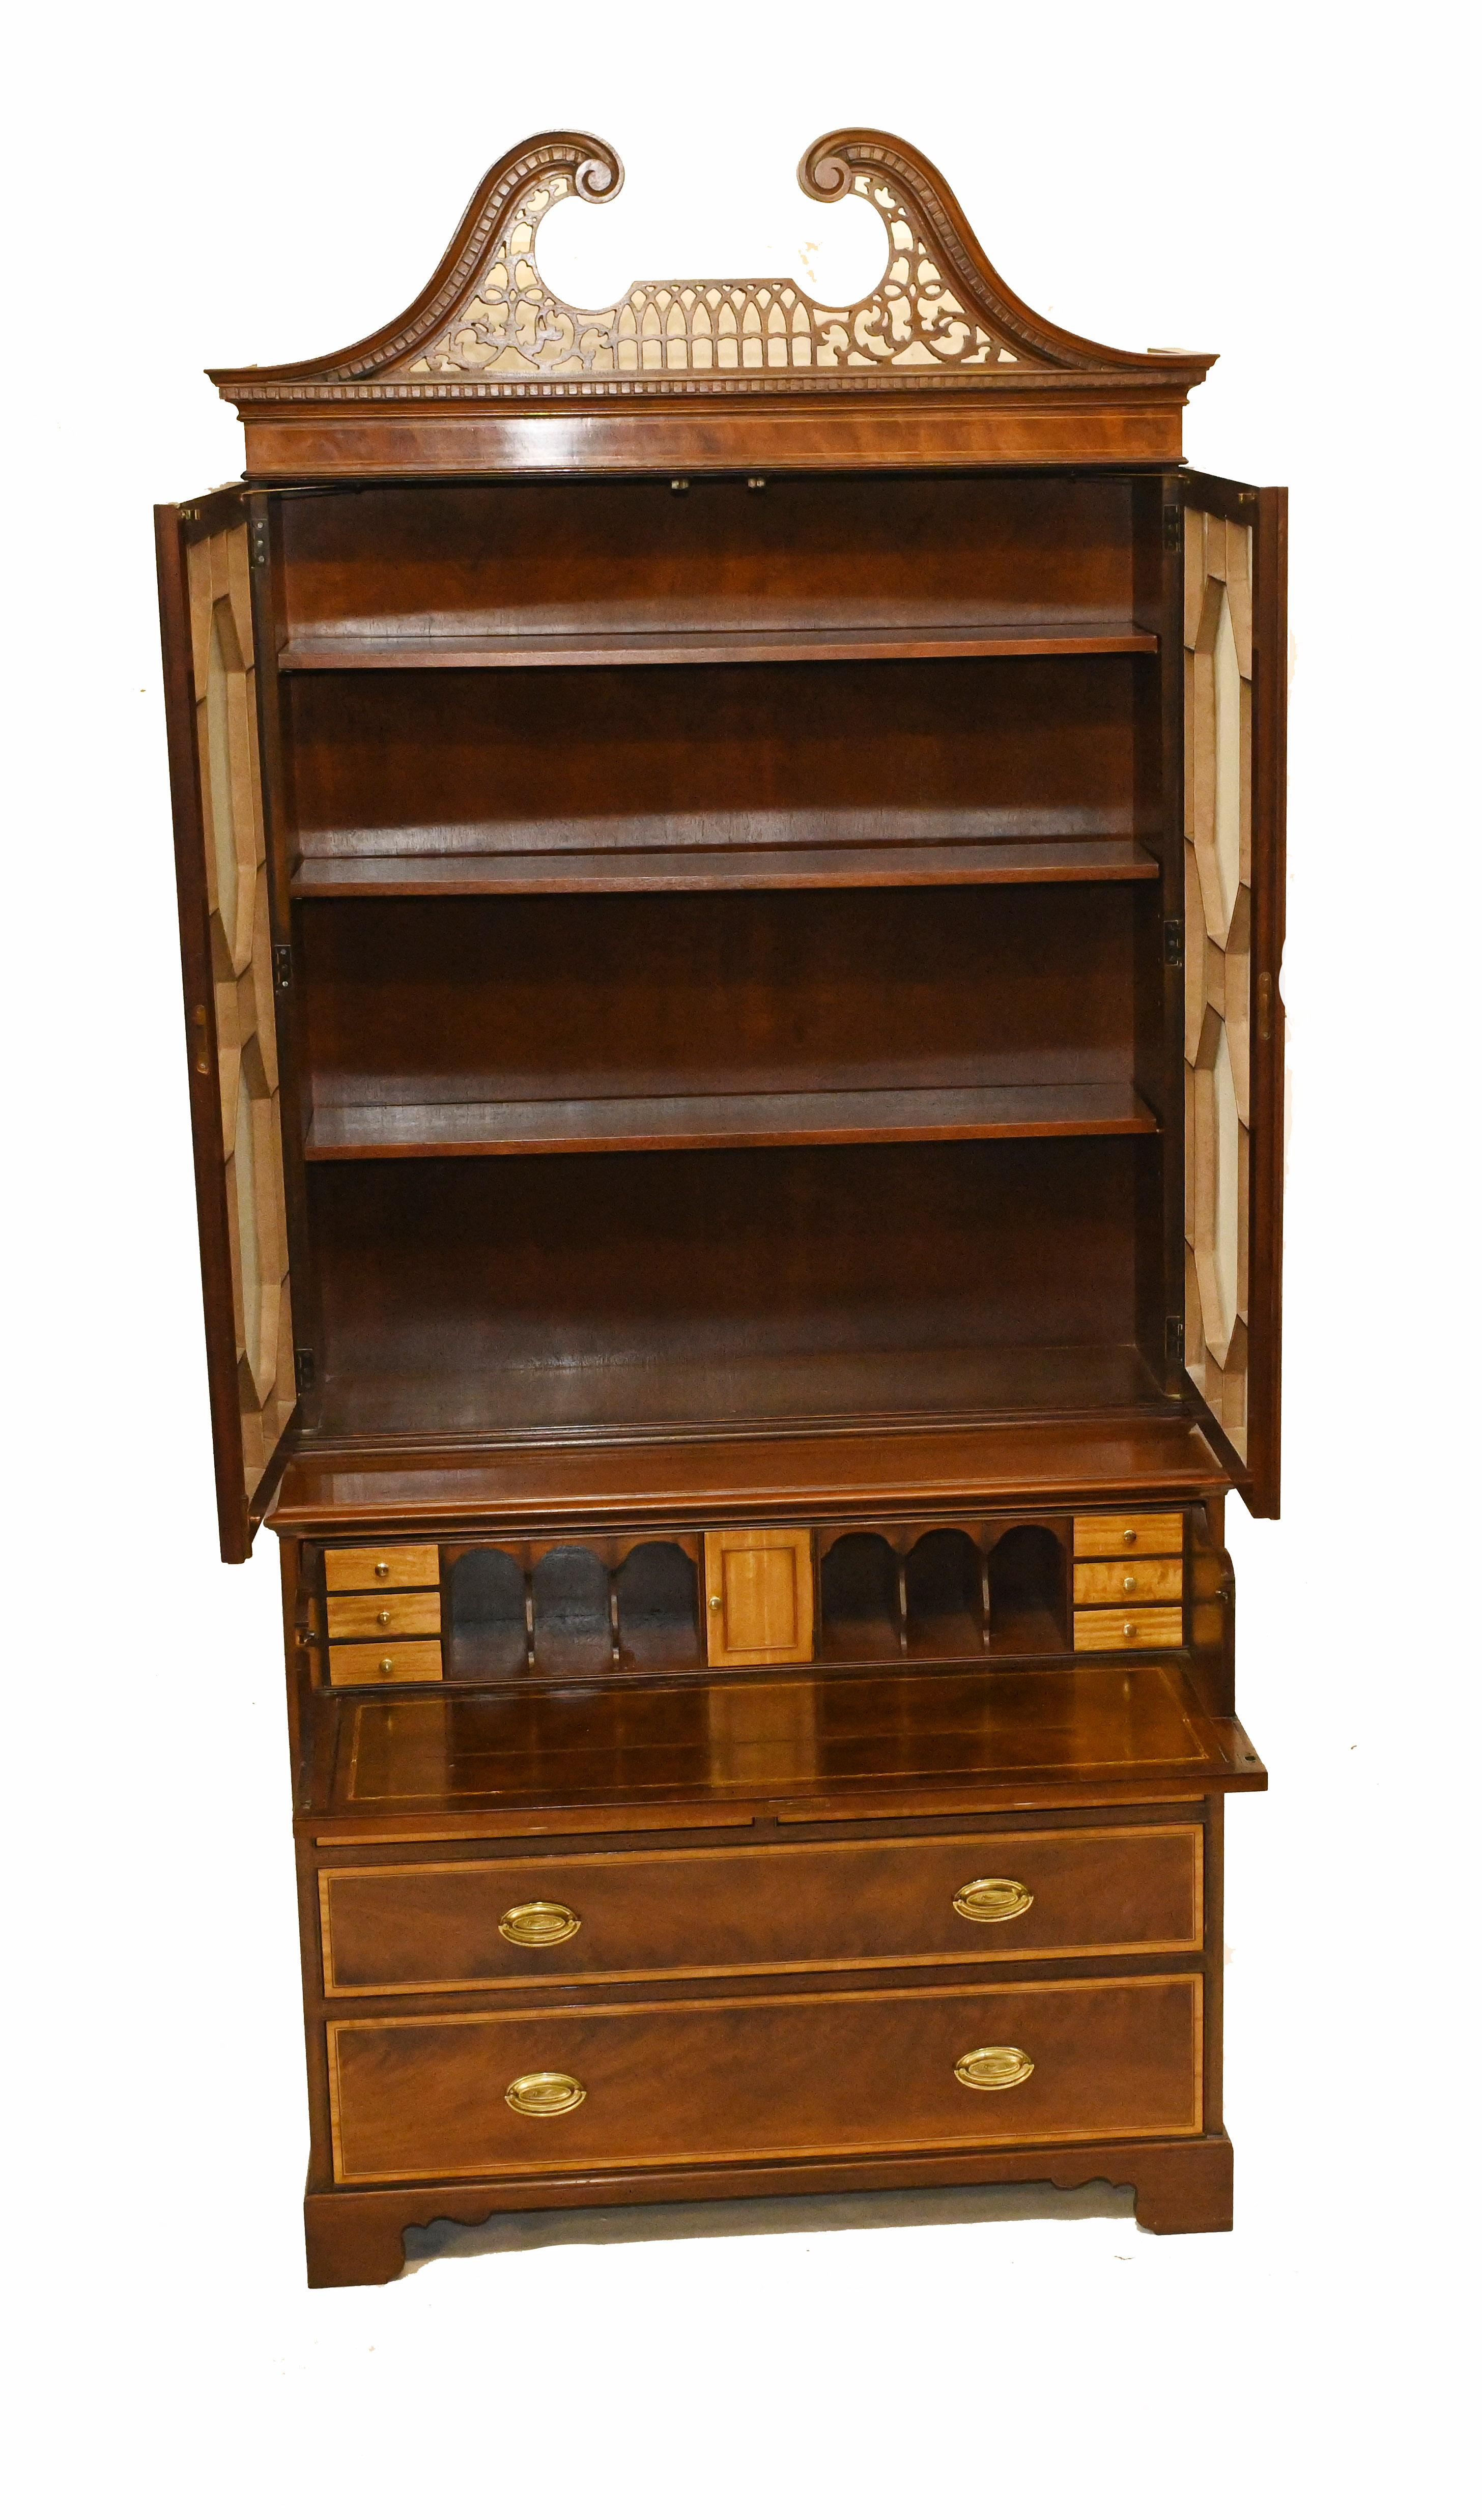 Sheraton Secretaire Bookcase Antique Mahogany Desk, 1910 For Sale 8